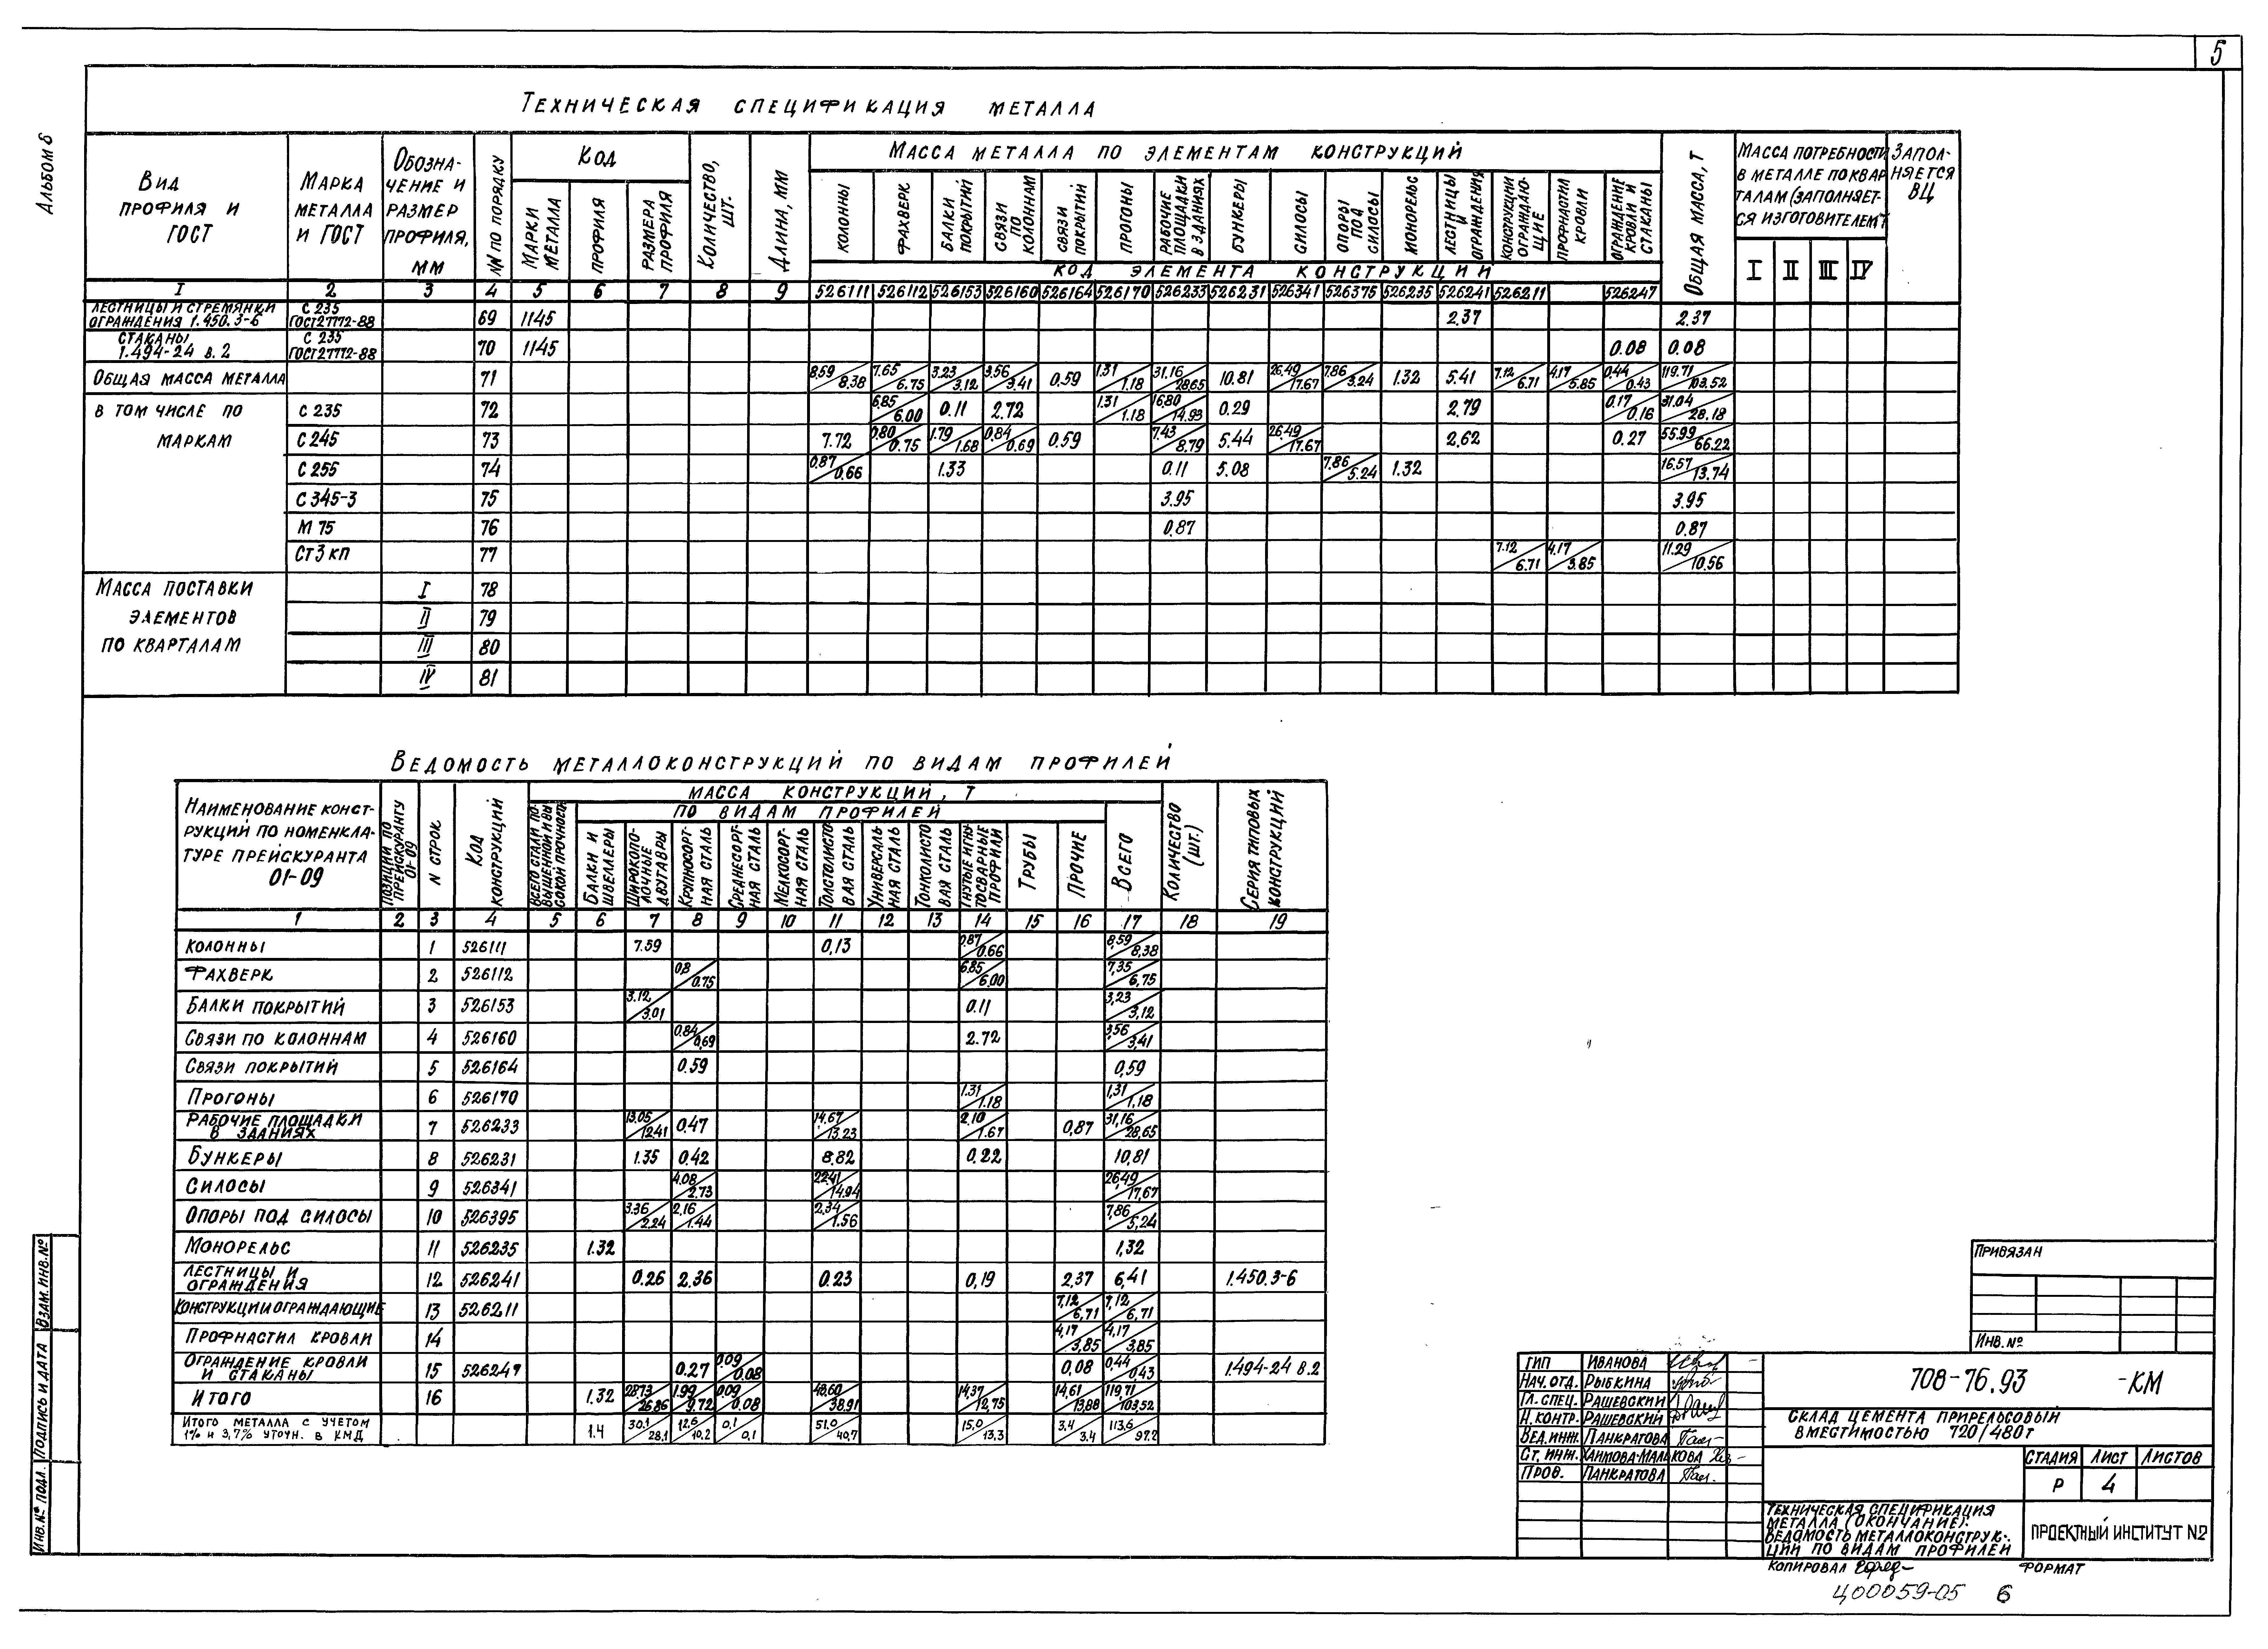 Типовой проект 708-76.93